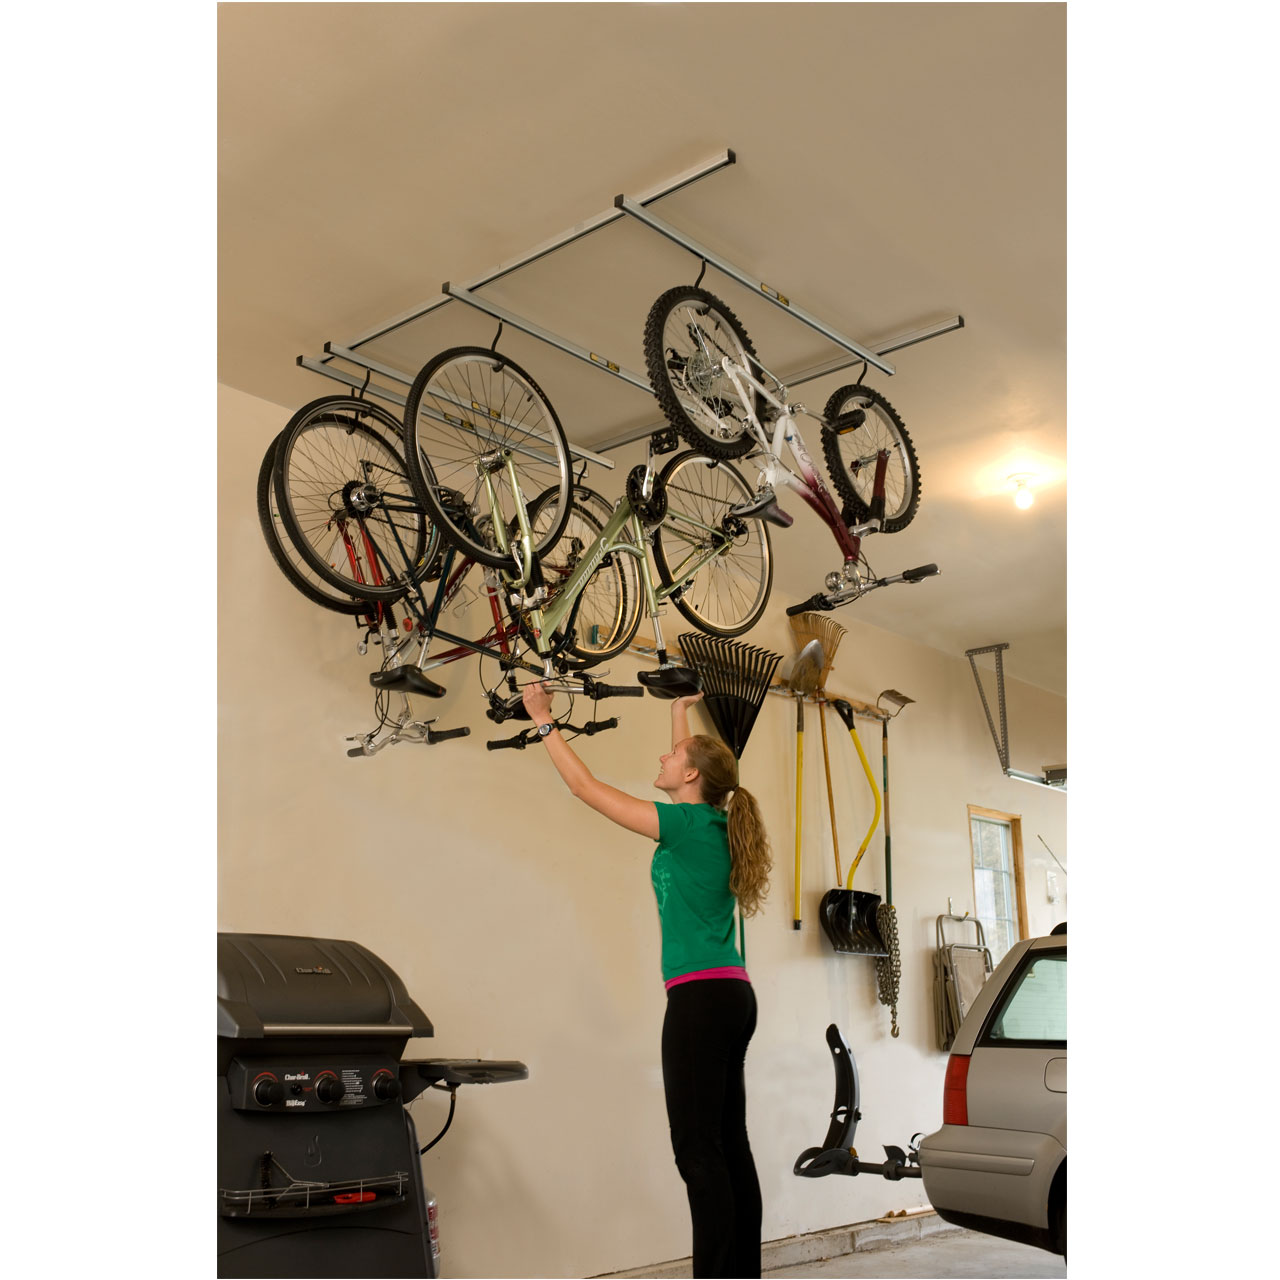 "woman hanging bike on overhead garage rack"